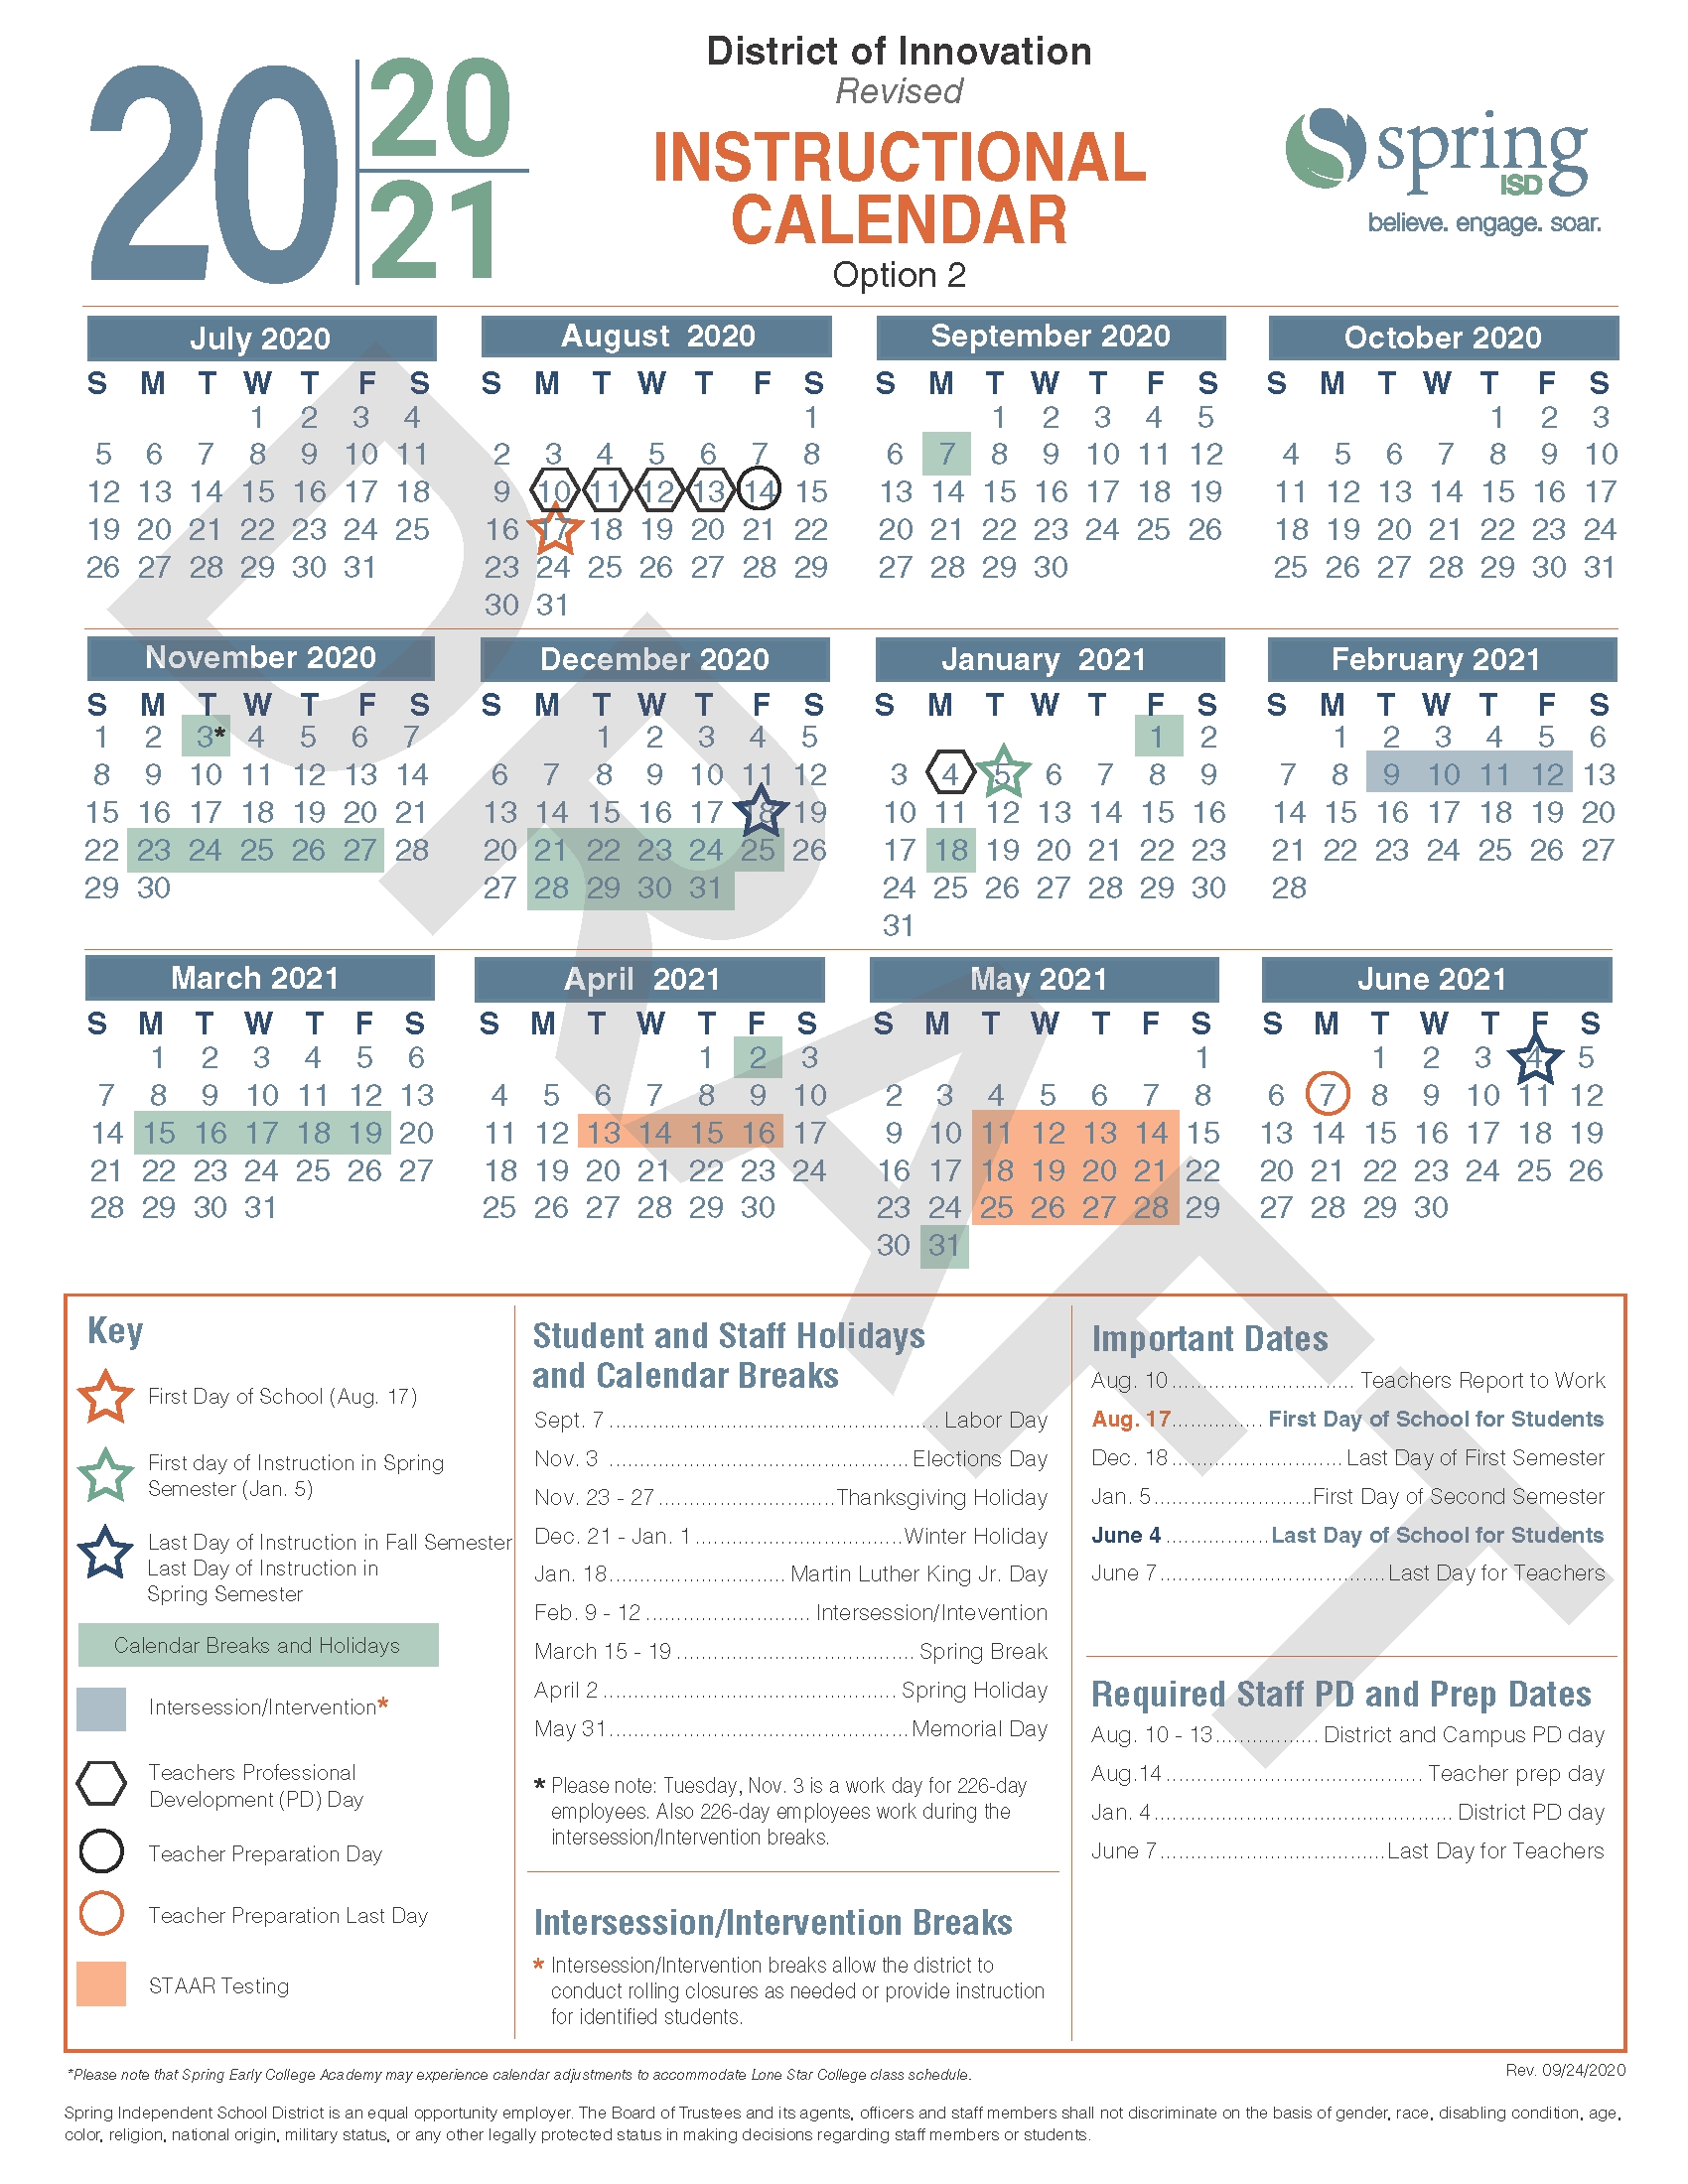 Calendar Survey / Revised 2020 21 Instructional Calendar